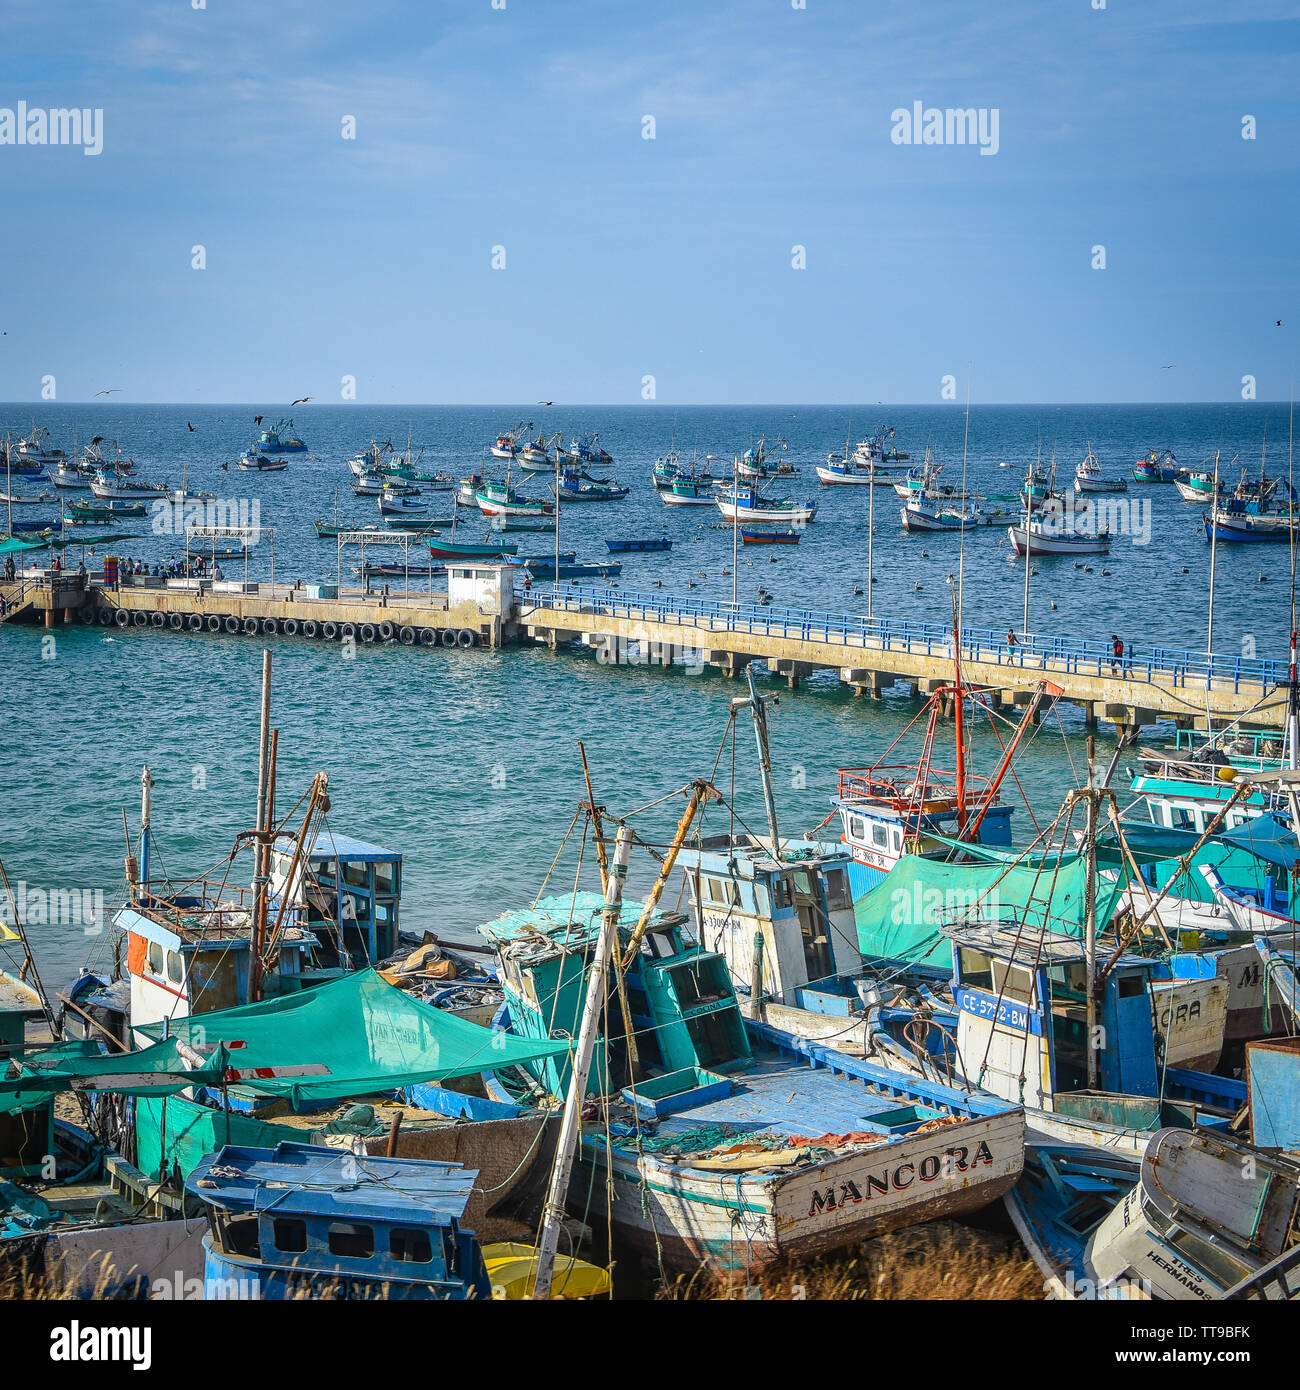 Mancora, Perù - Aprile 18, 2019: barche da pesca in Mancora Marina Foto Stock